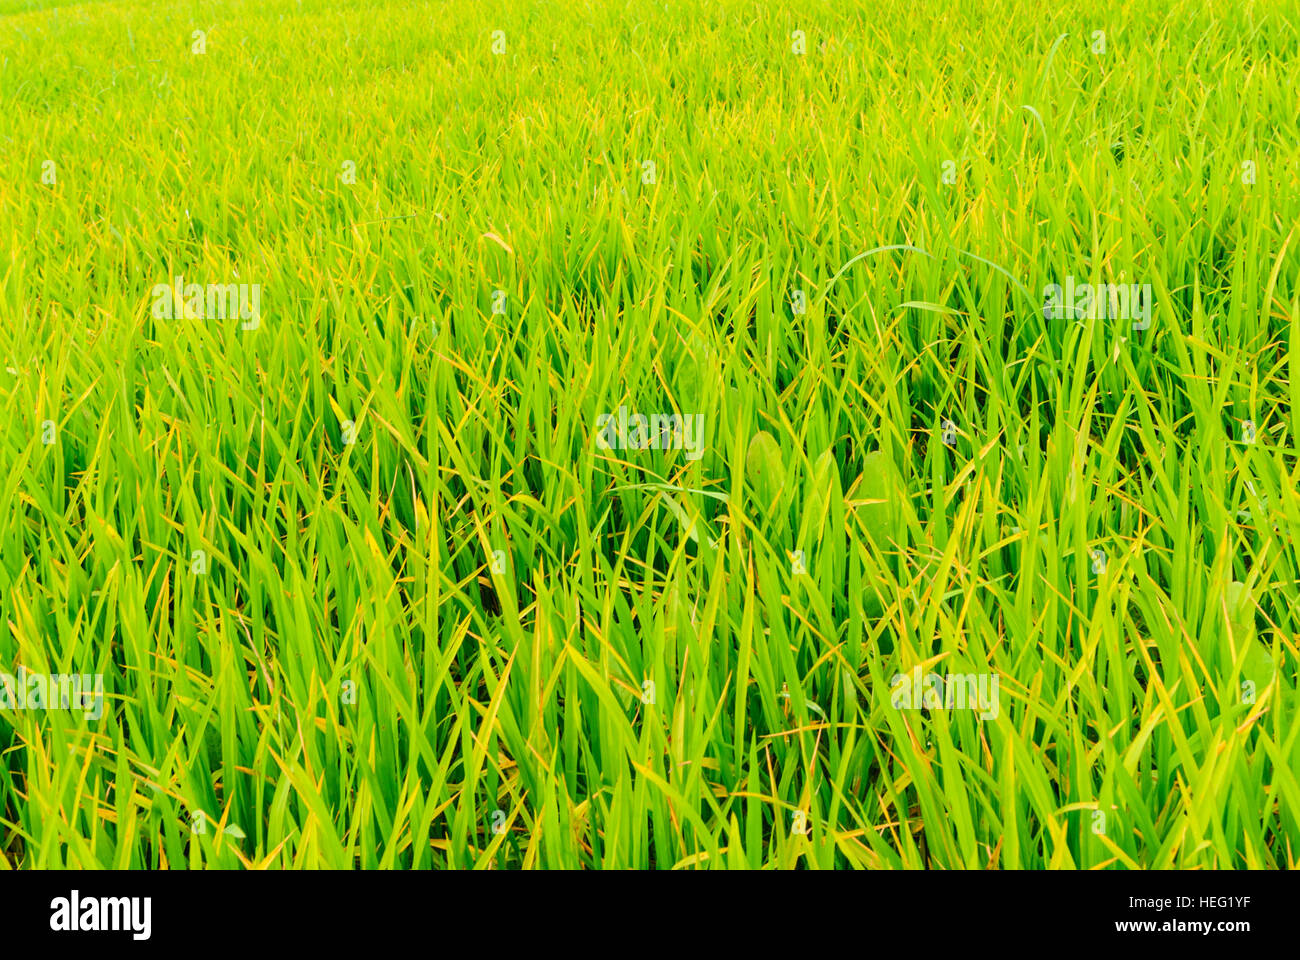 Hariargup: Rice field, Khulna Division, Bangladesh Stock Photo